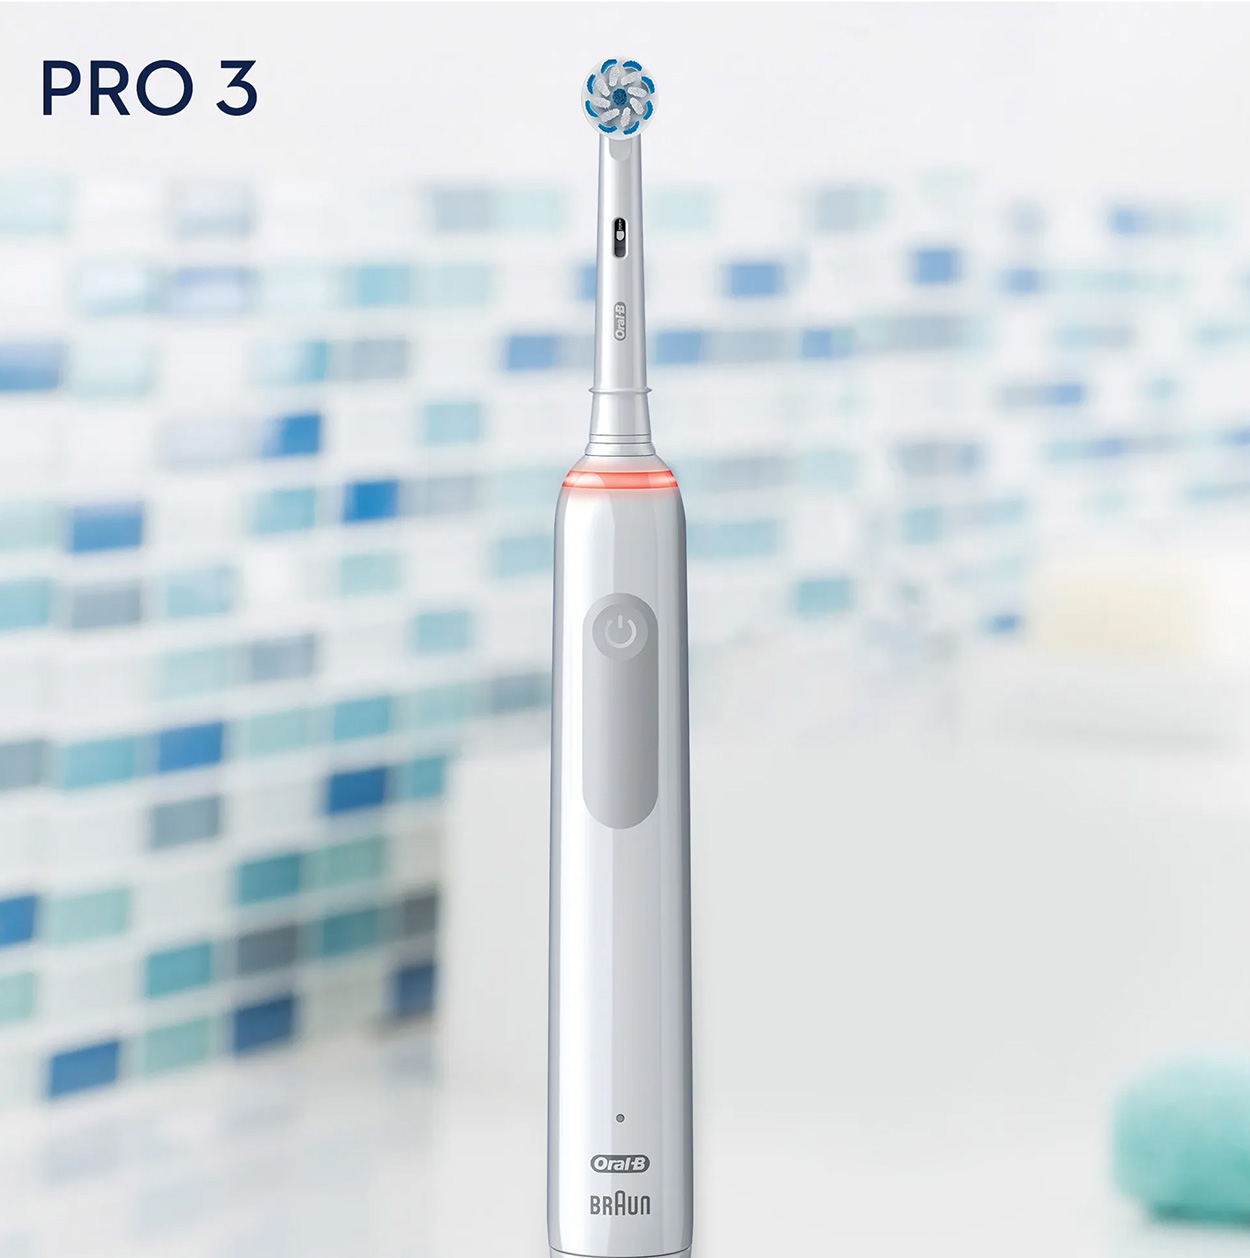 3900 Pro 3 ORAL-B Elektrische weiß Zahnbürste